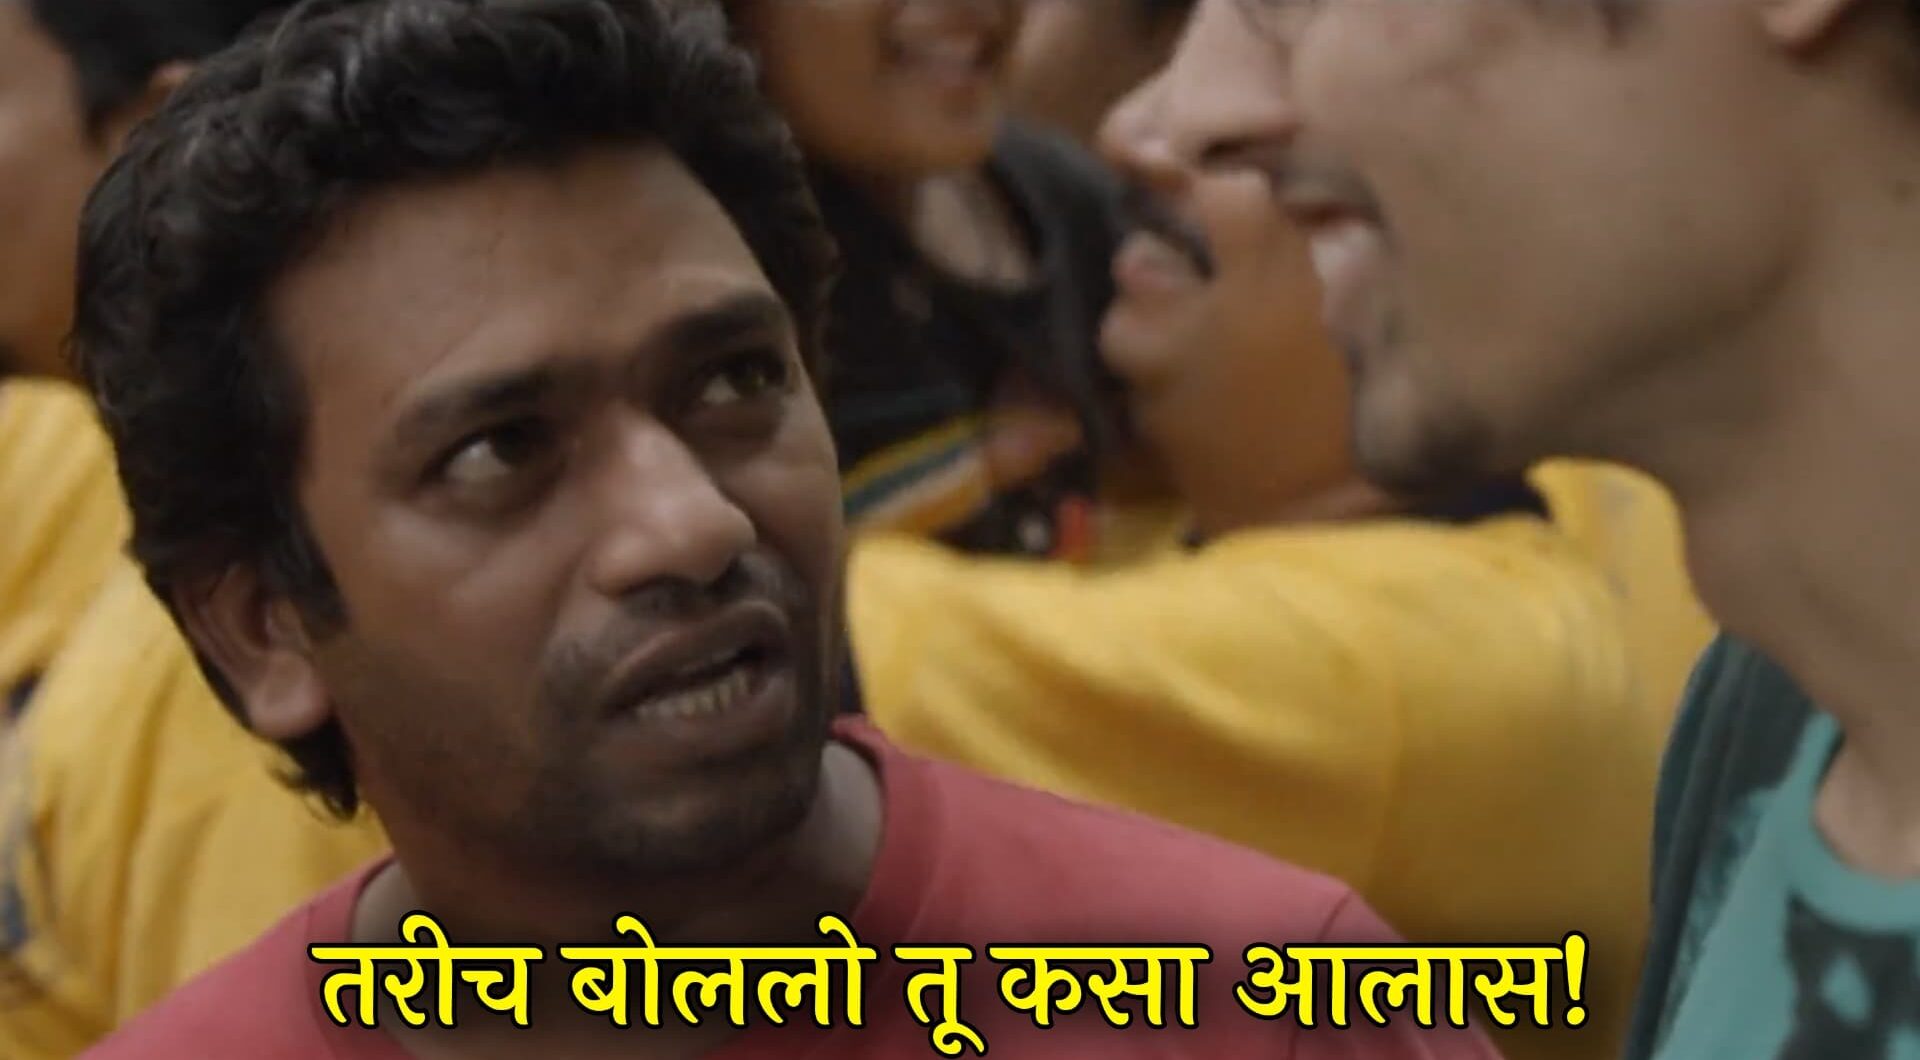 Rege Marathi Movie Dialogues Meme Templates 